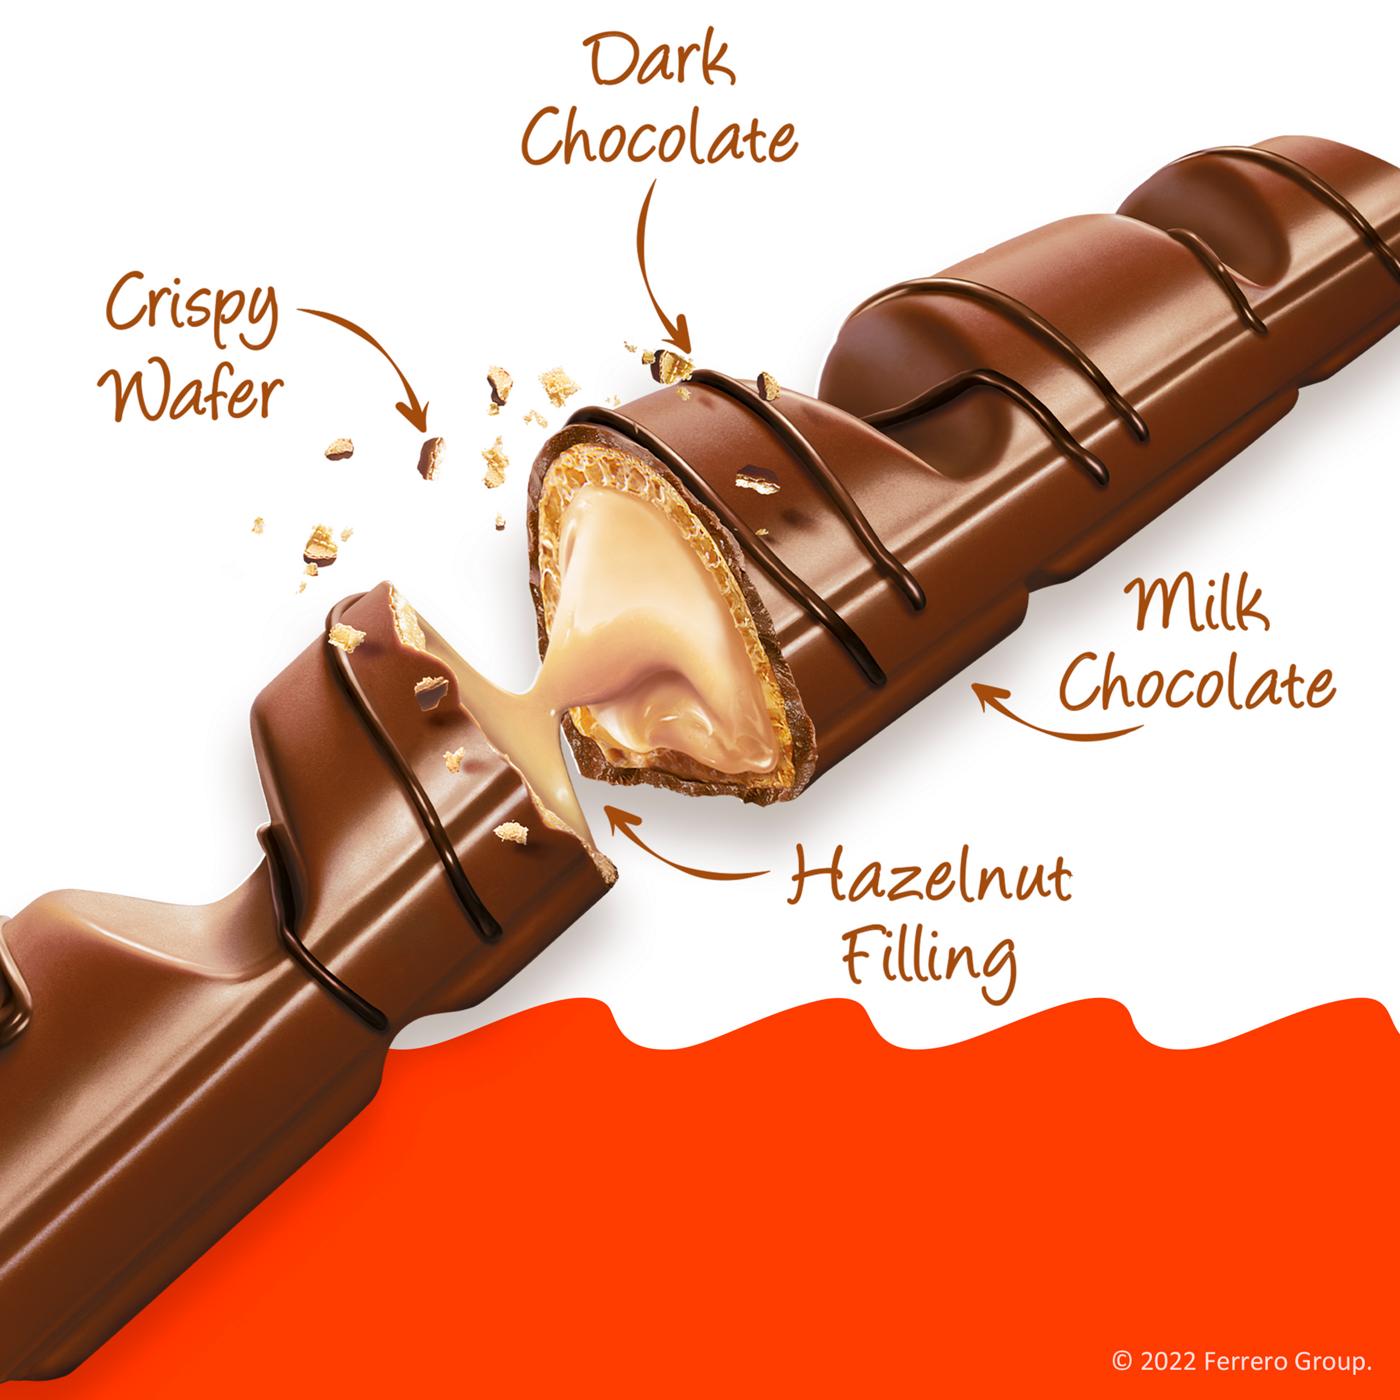 Kinder Bueno Crispy Chocolate Bars; image 3 of 5